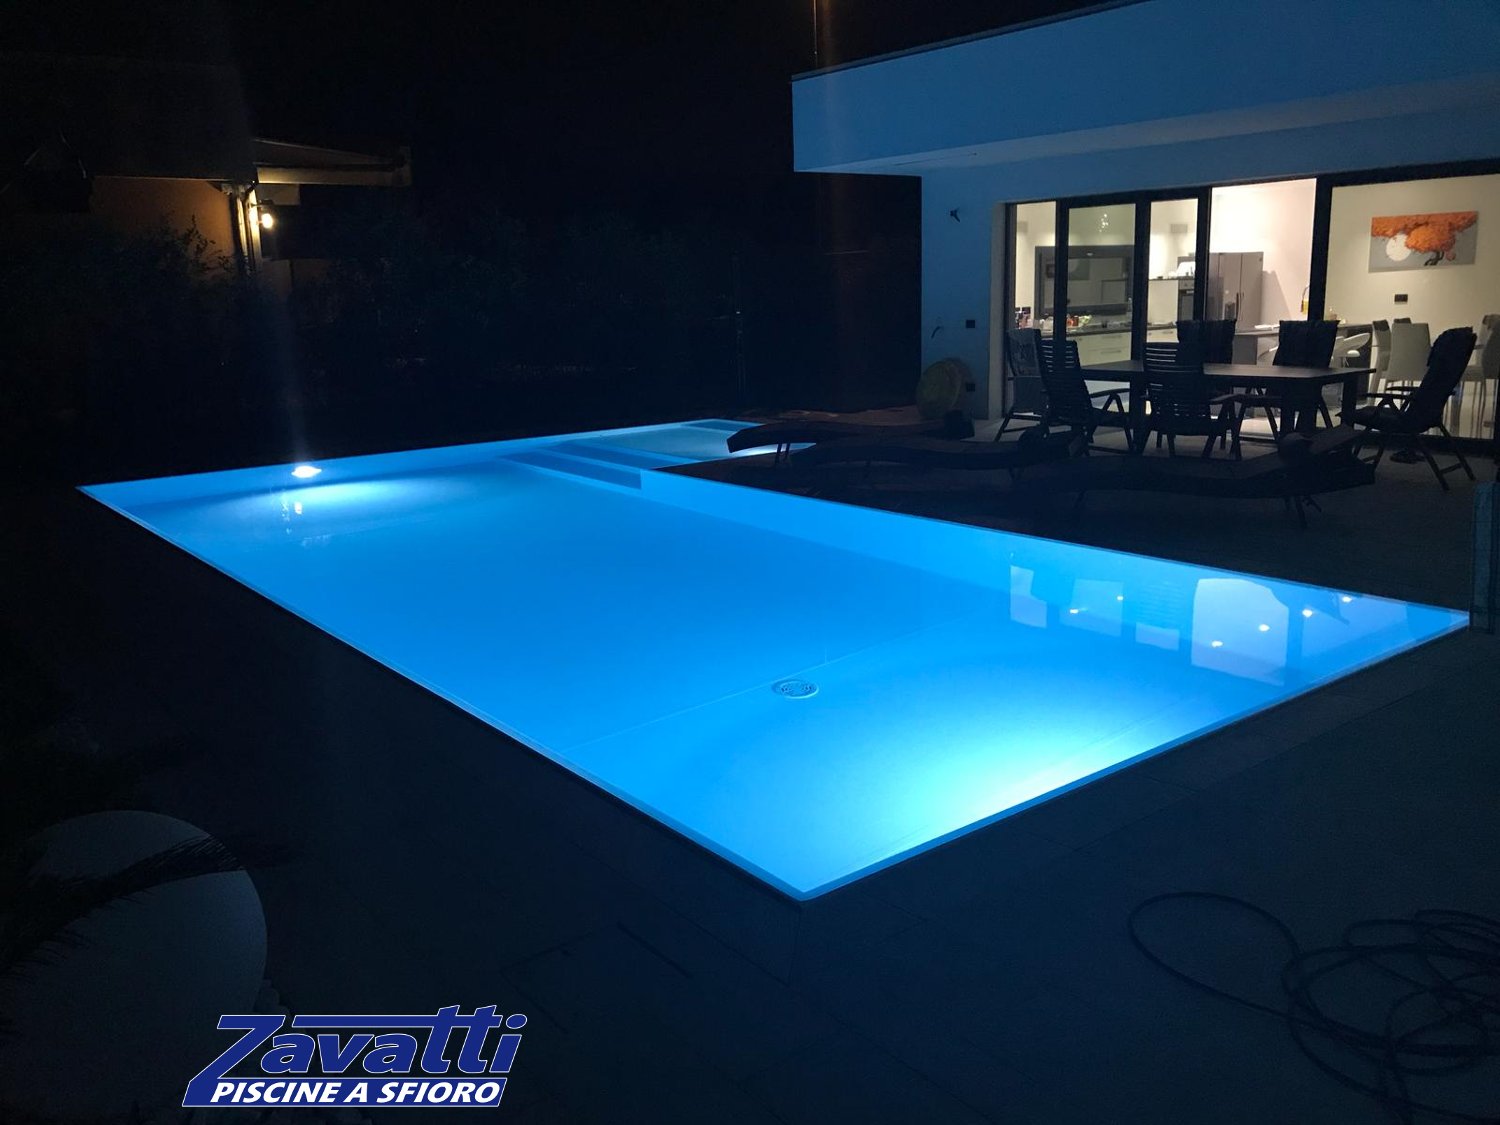 Fascino notturno di una piscina a sfioro Made by Zavatti